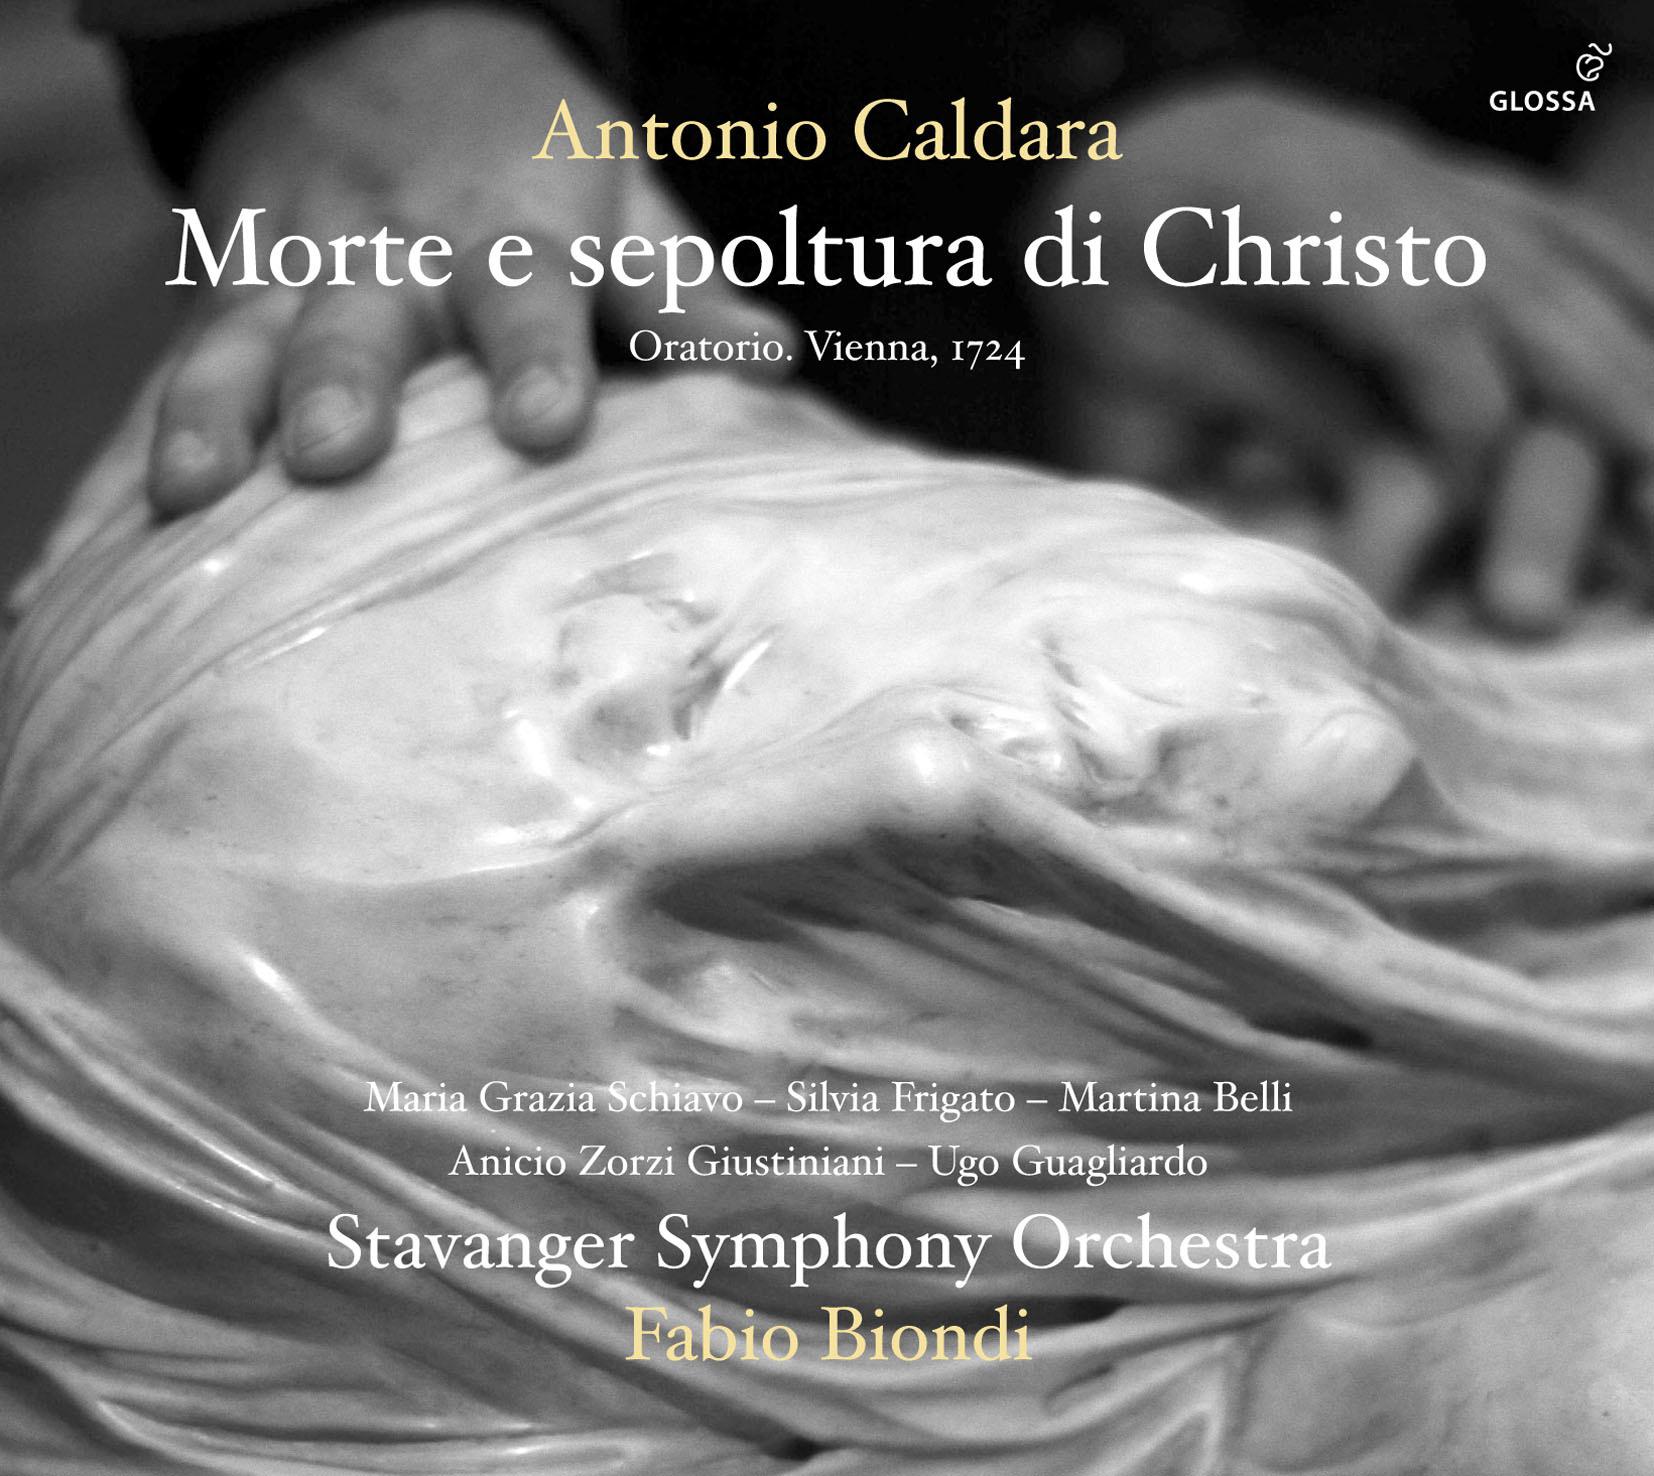 Sonata for Strings in E-Flat Major, RV 130 "Al Santo Sepolcro"